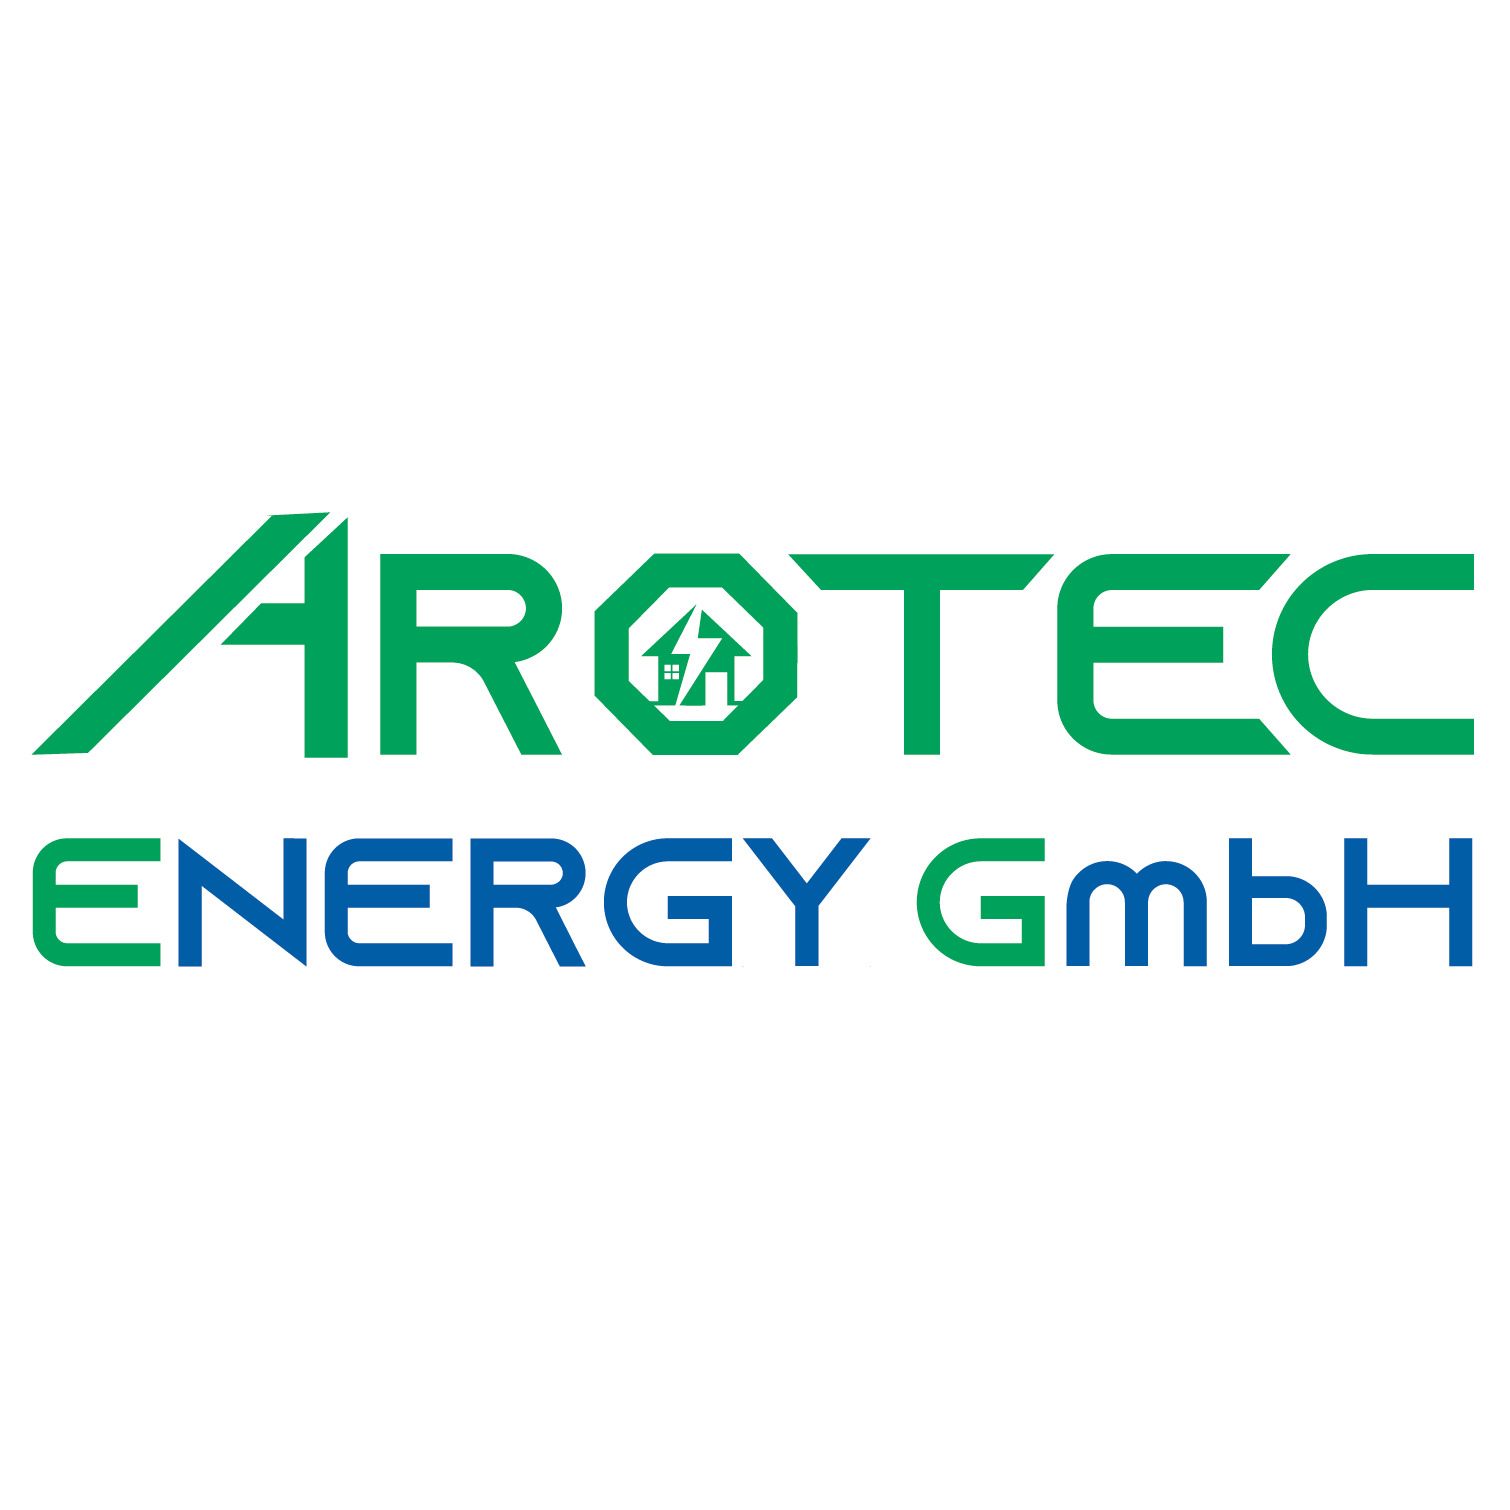 Arotec Energy GmbH